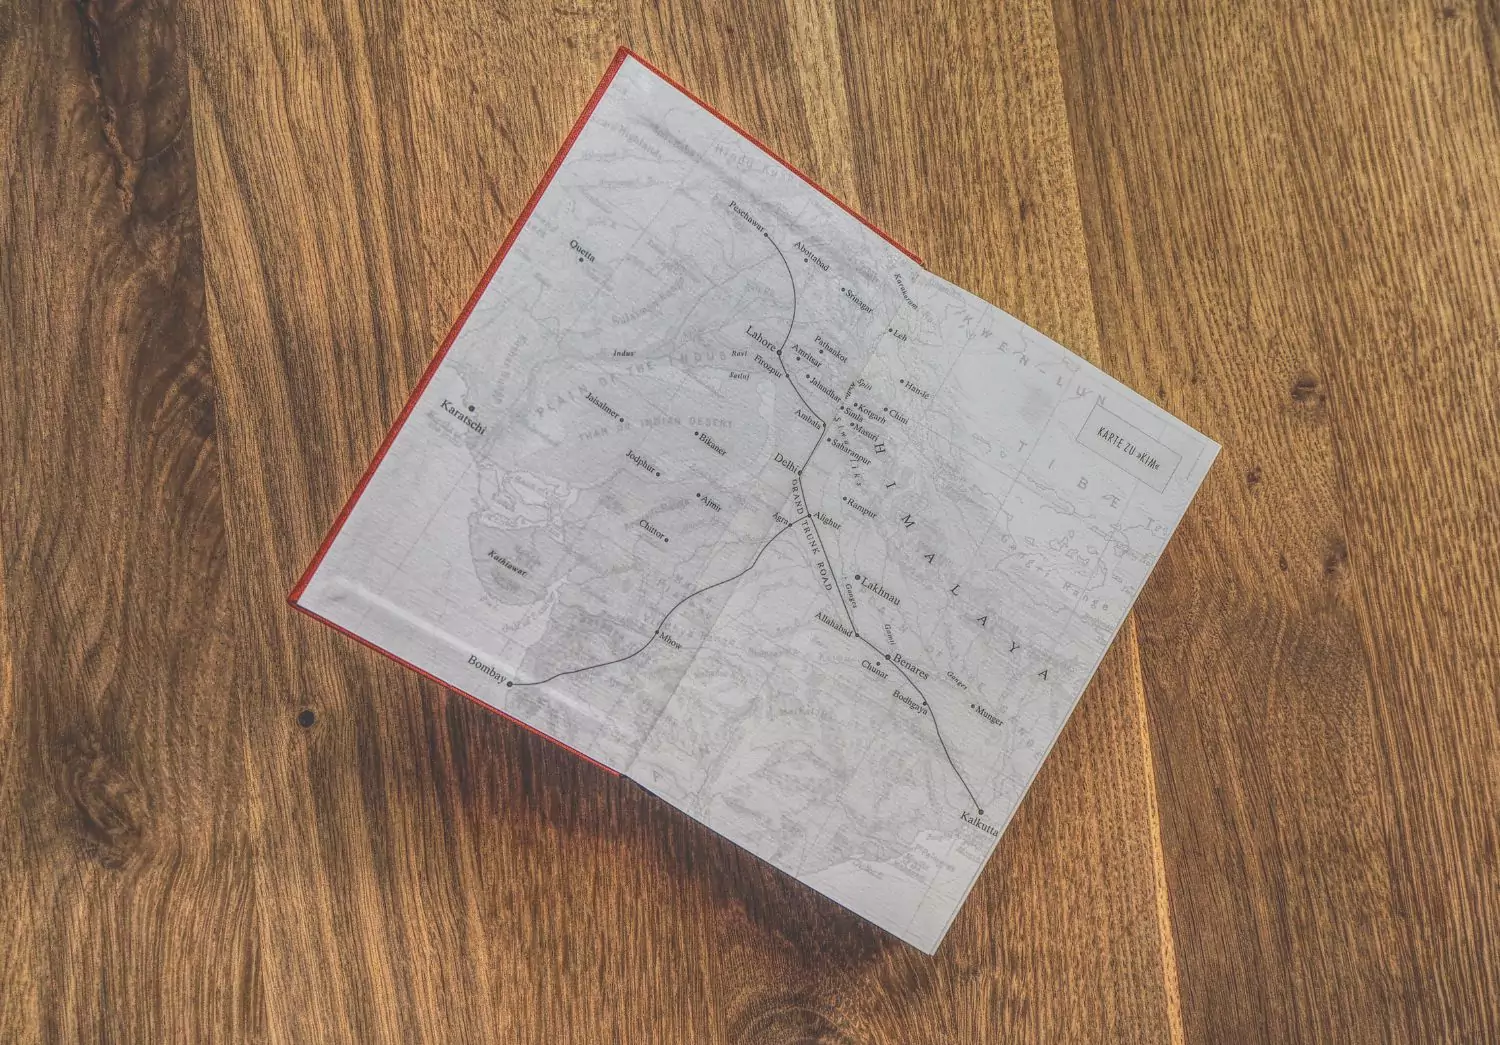 Ein Buch mit einer Karte darauf auf einem Holzboden.